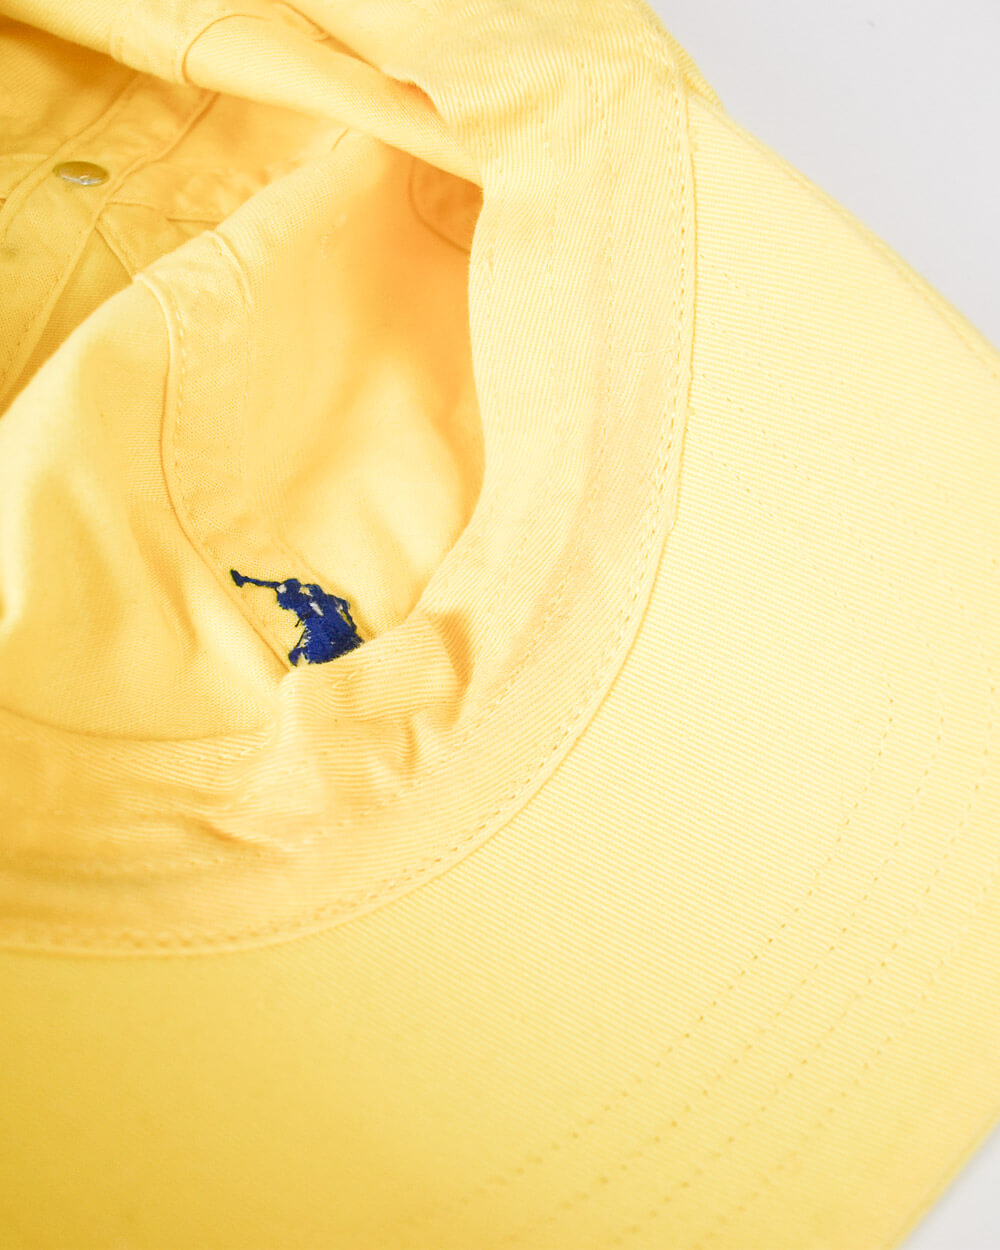 Yellow Ralph Lauren Classic Sport Cap